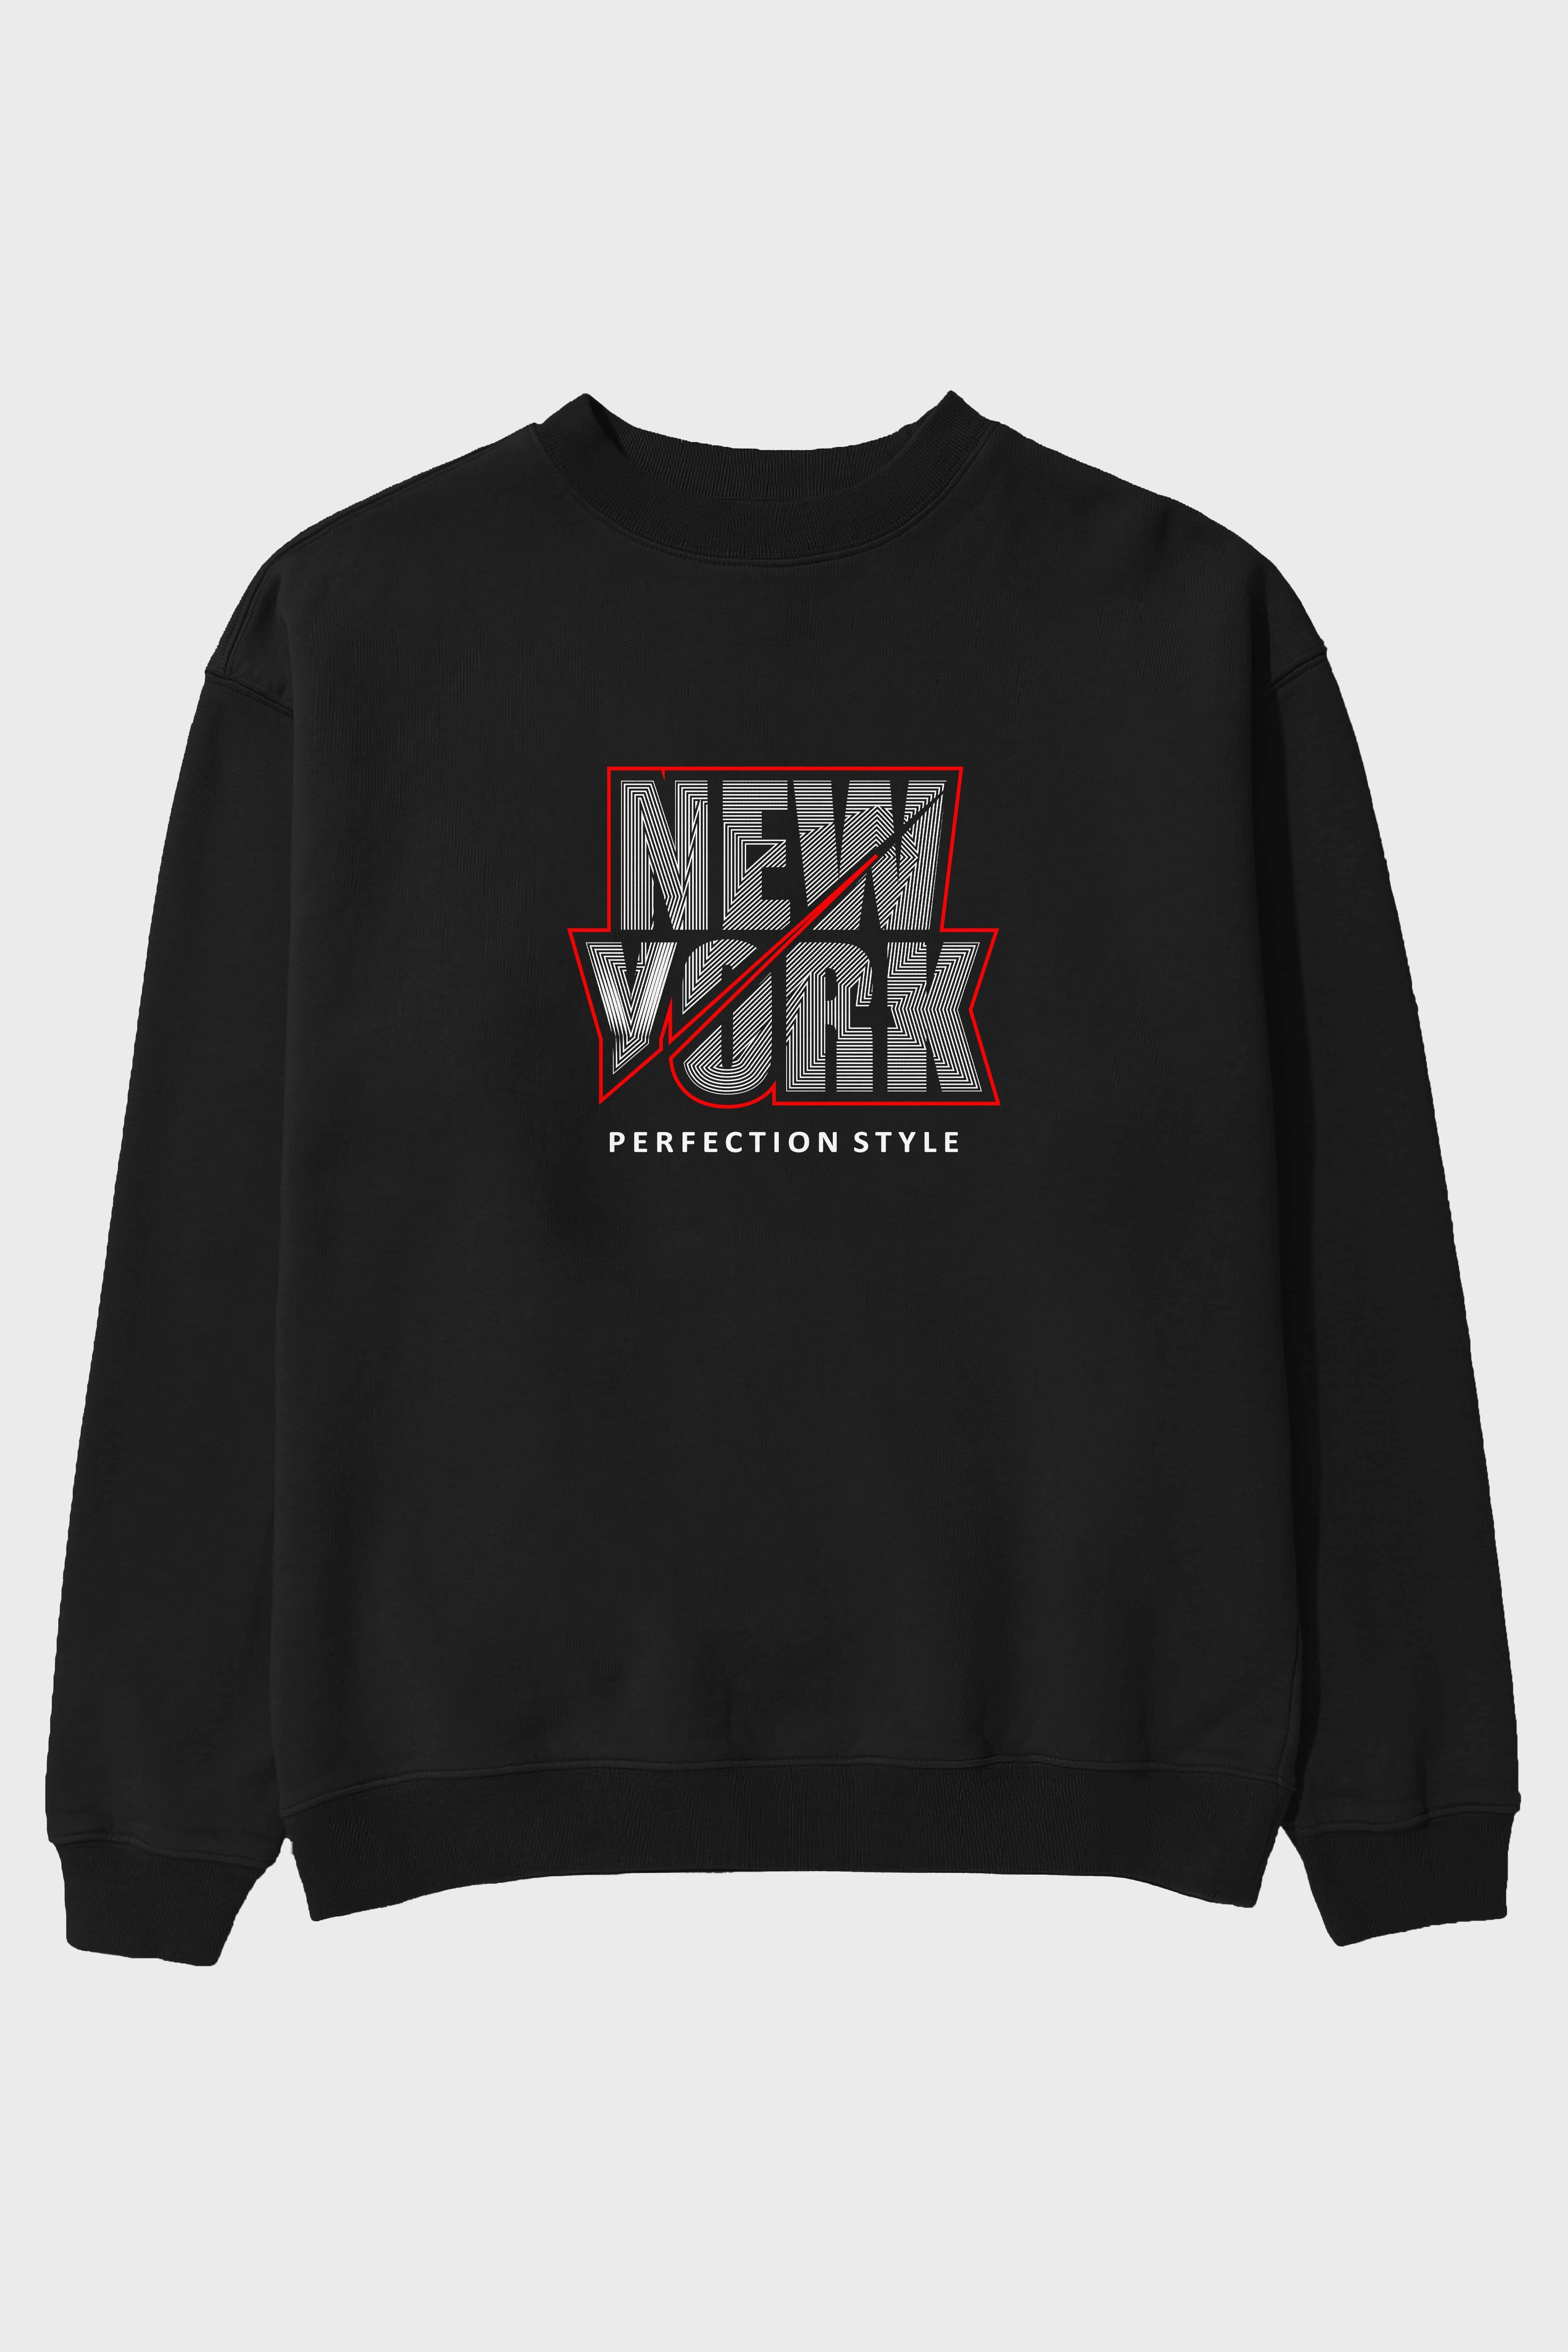 New York Perfection Style Ön Baskılı Oversize Sweatshirt Erkek Kadın Unisex